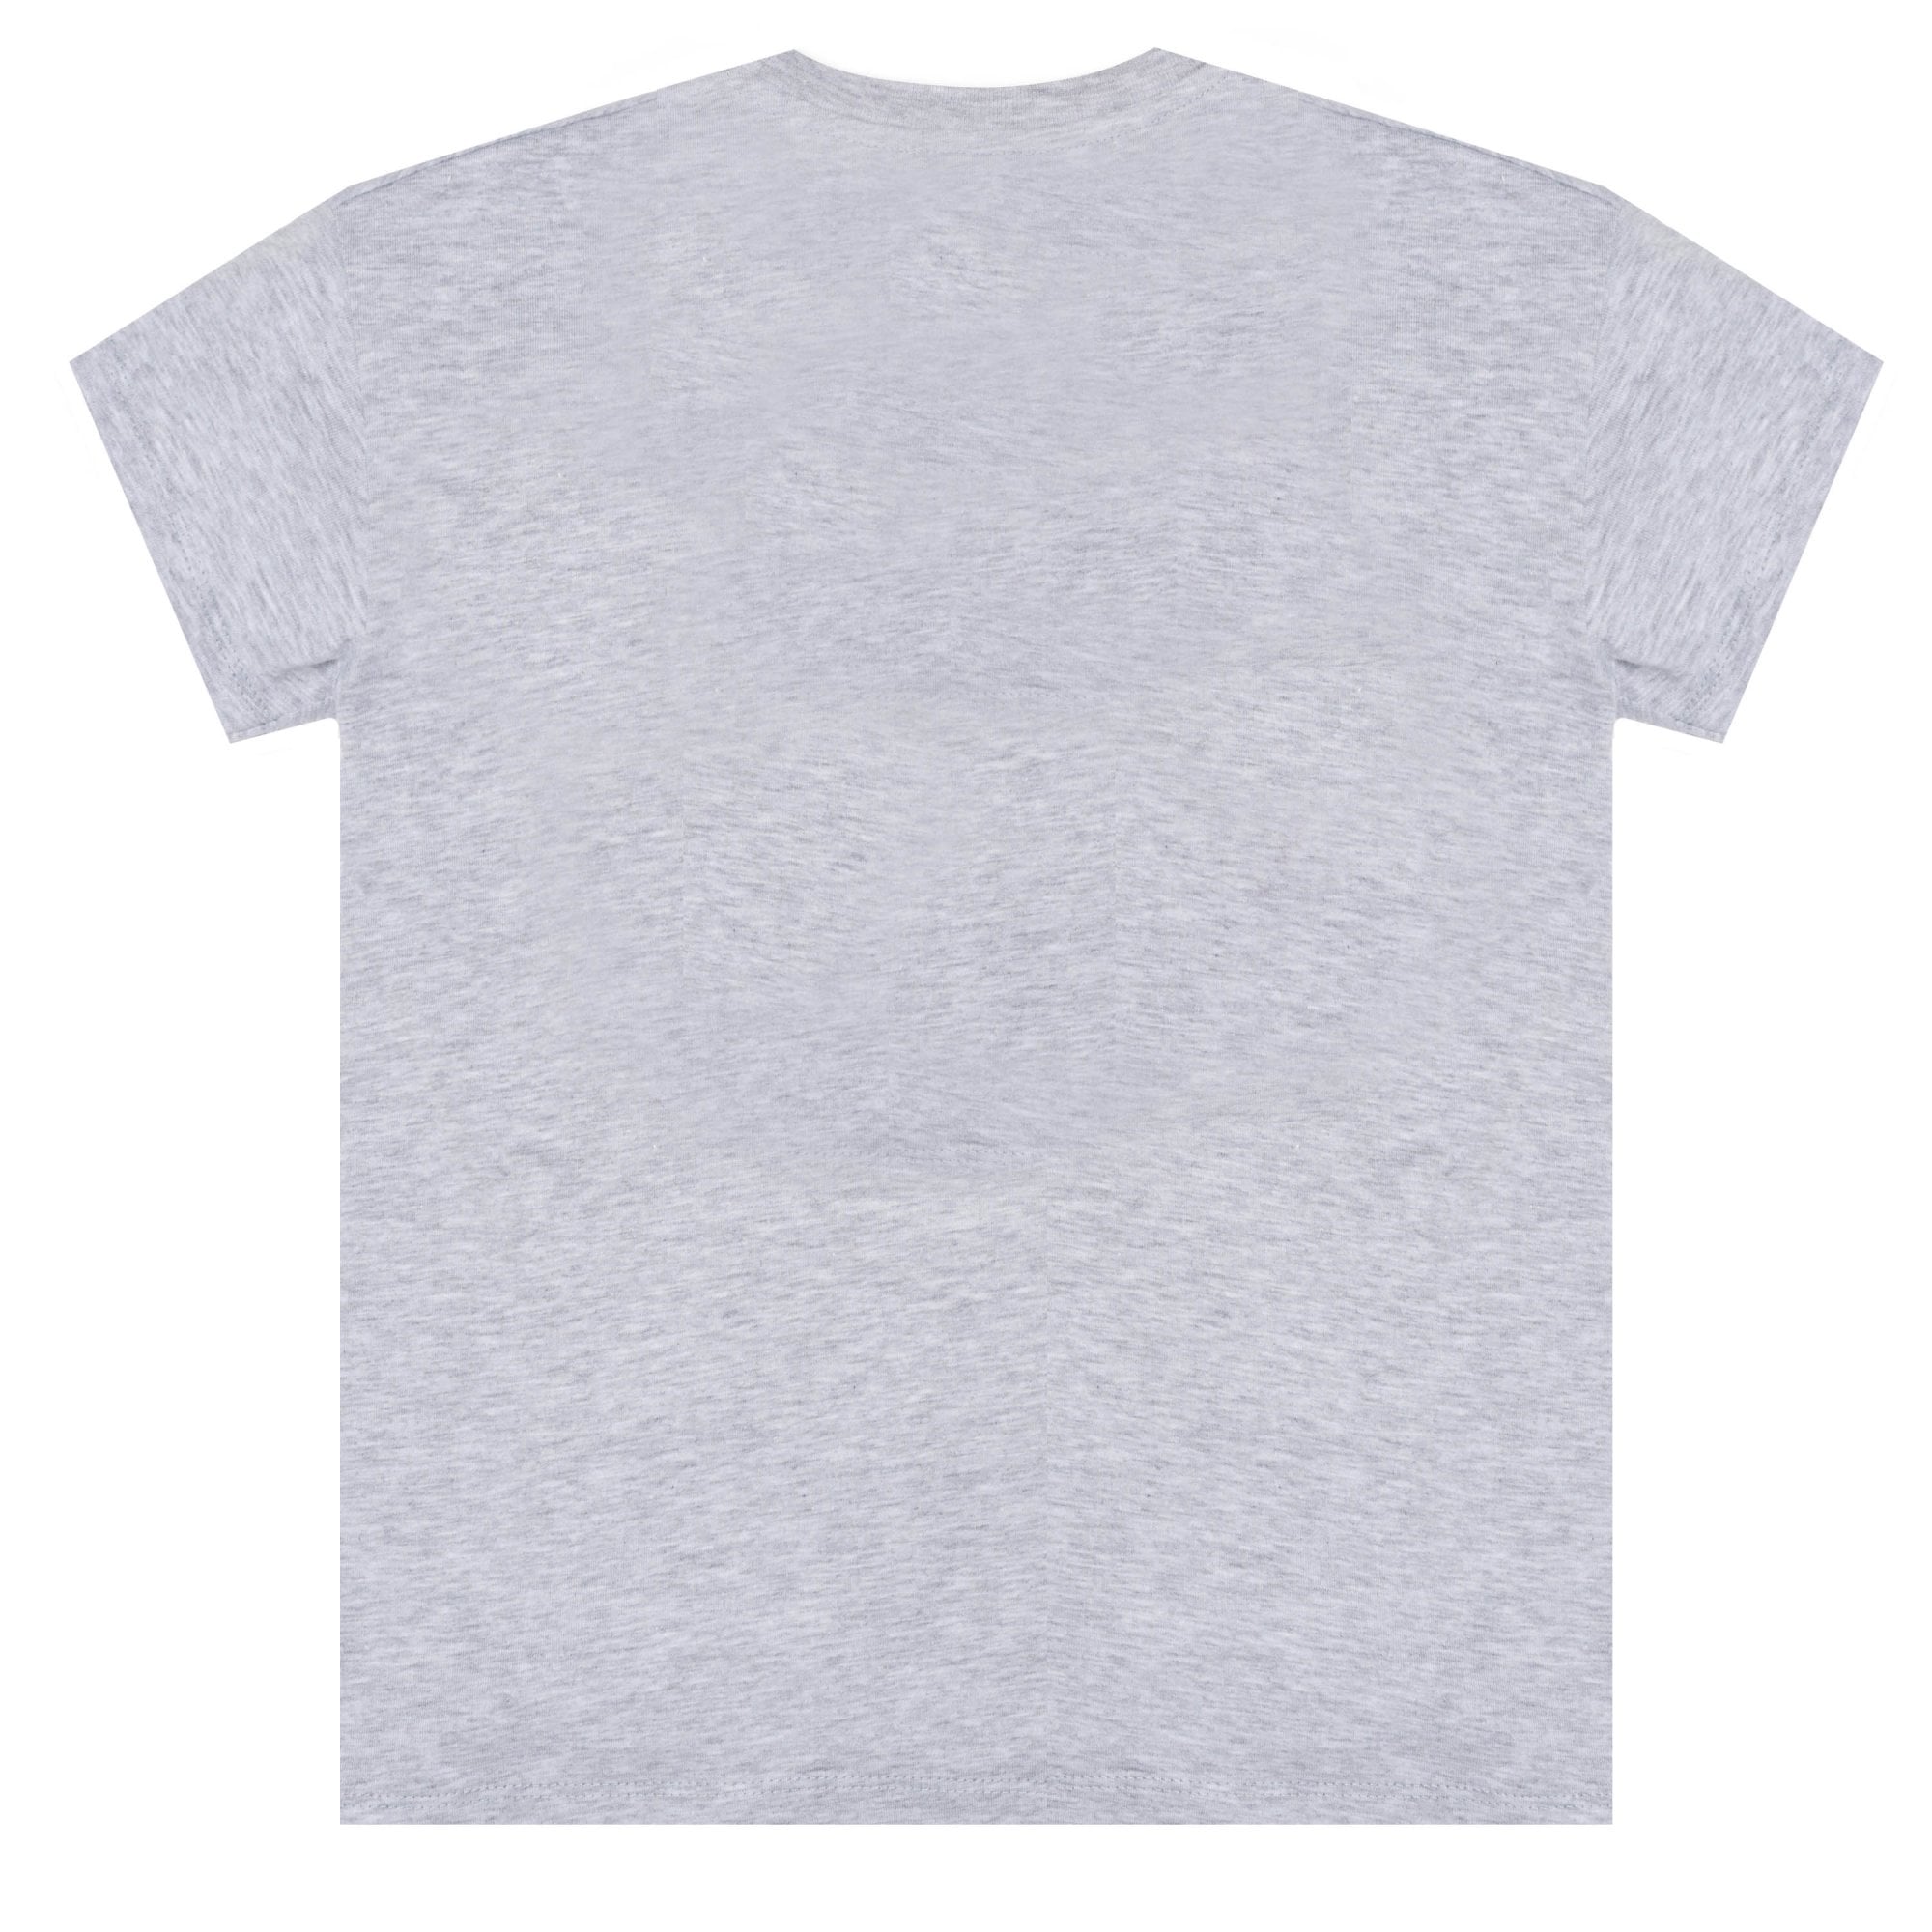 Kenzo Boys Tiger T-shirt Grey 8Y